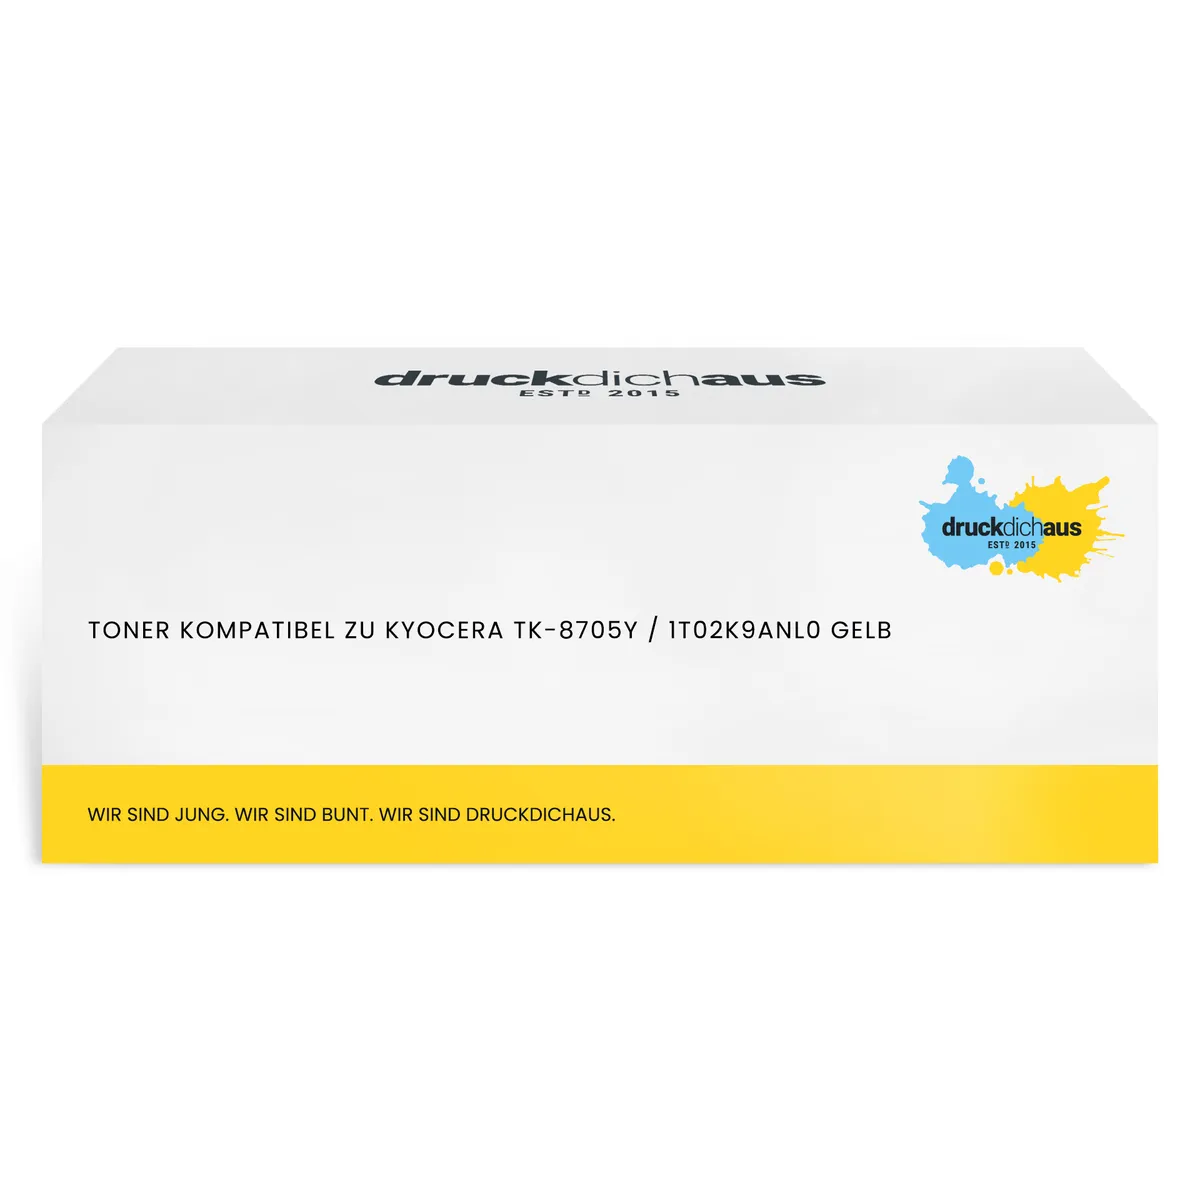 Toner kompatibel zu Kyocera TK-8705Y / 1T02K9ANL0 gelb